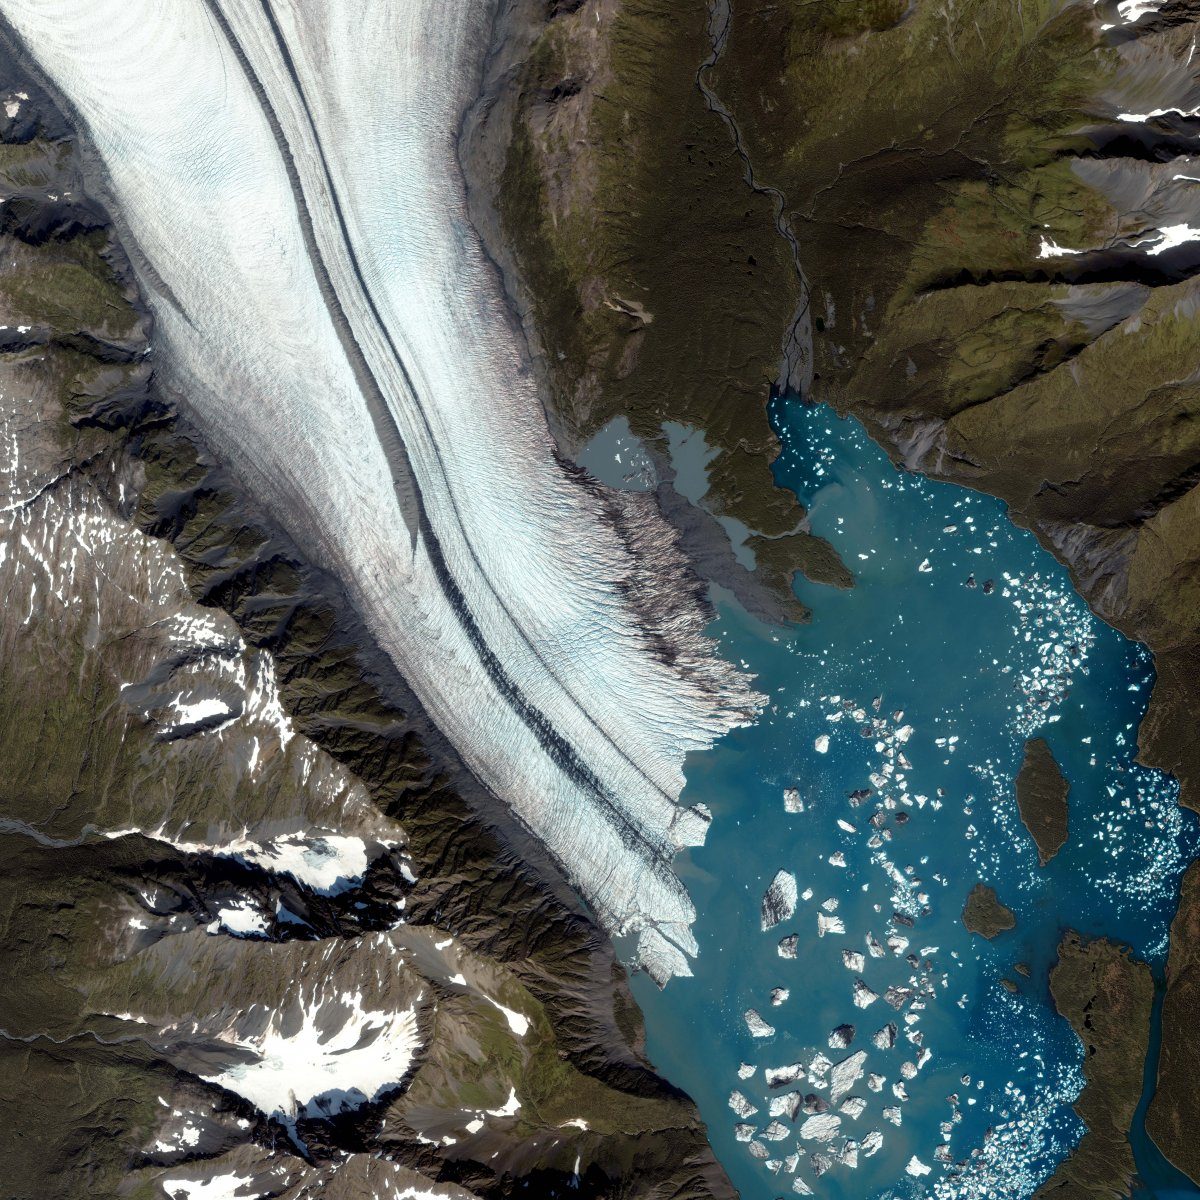 Bear Glacier